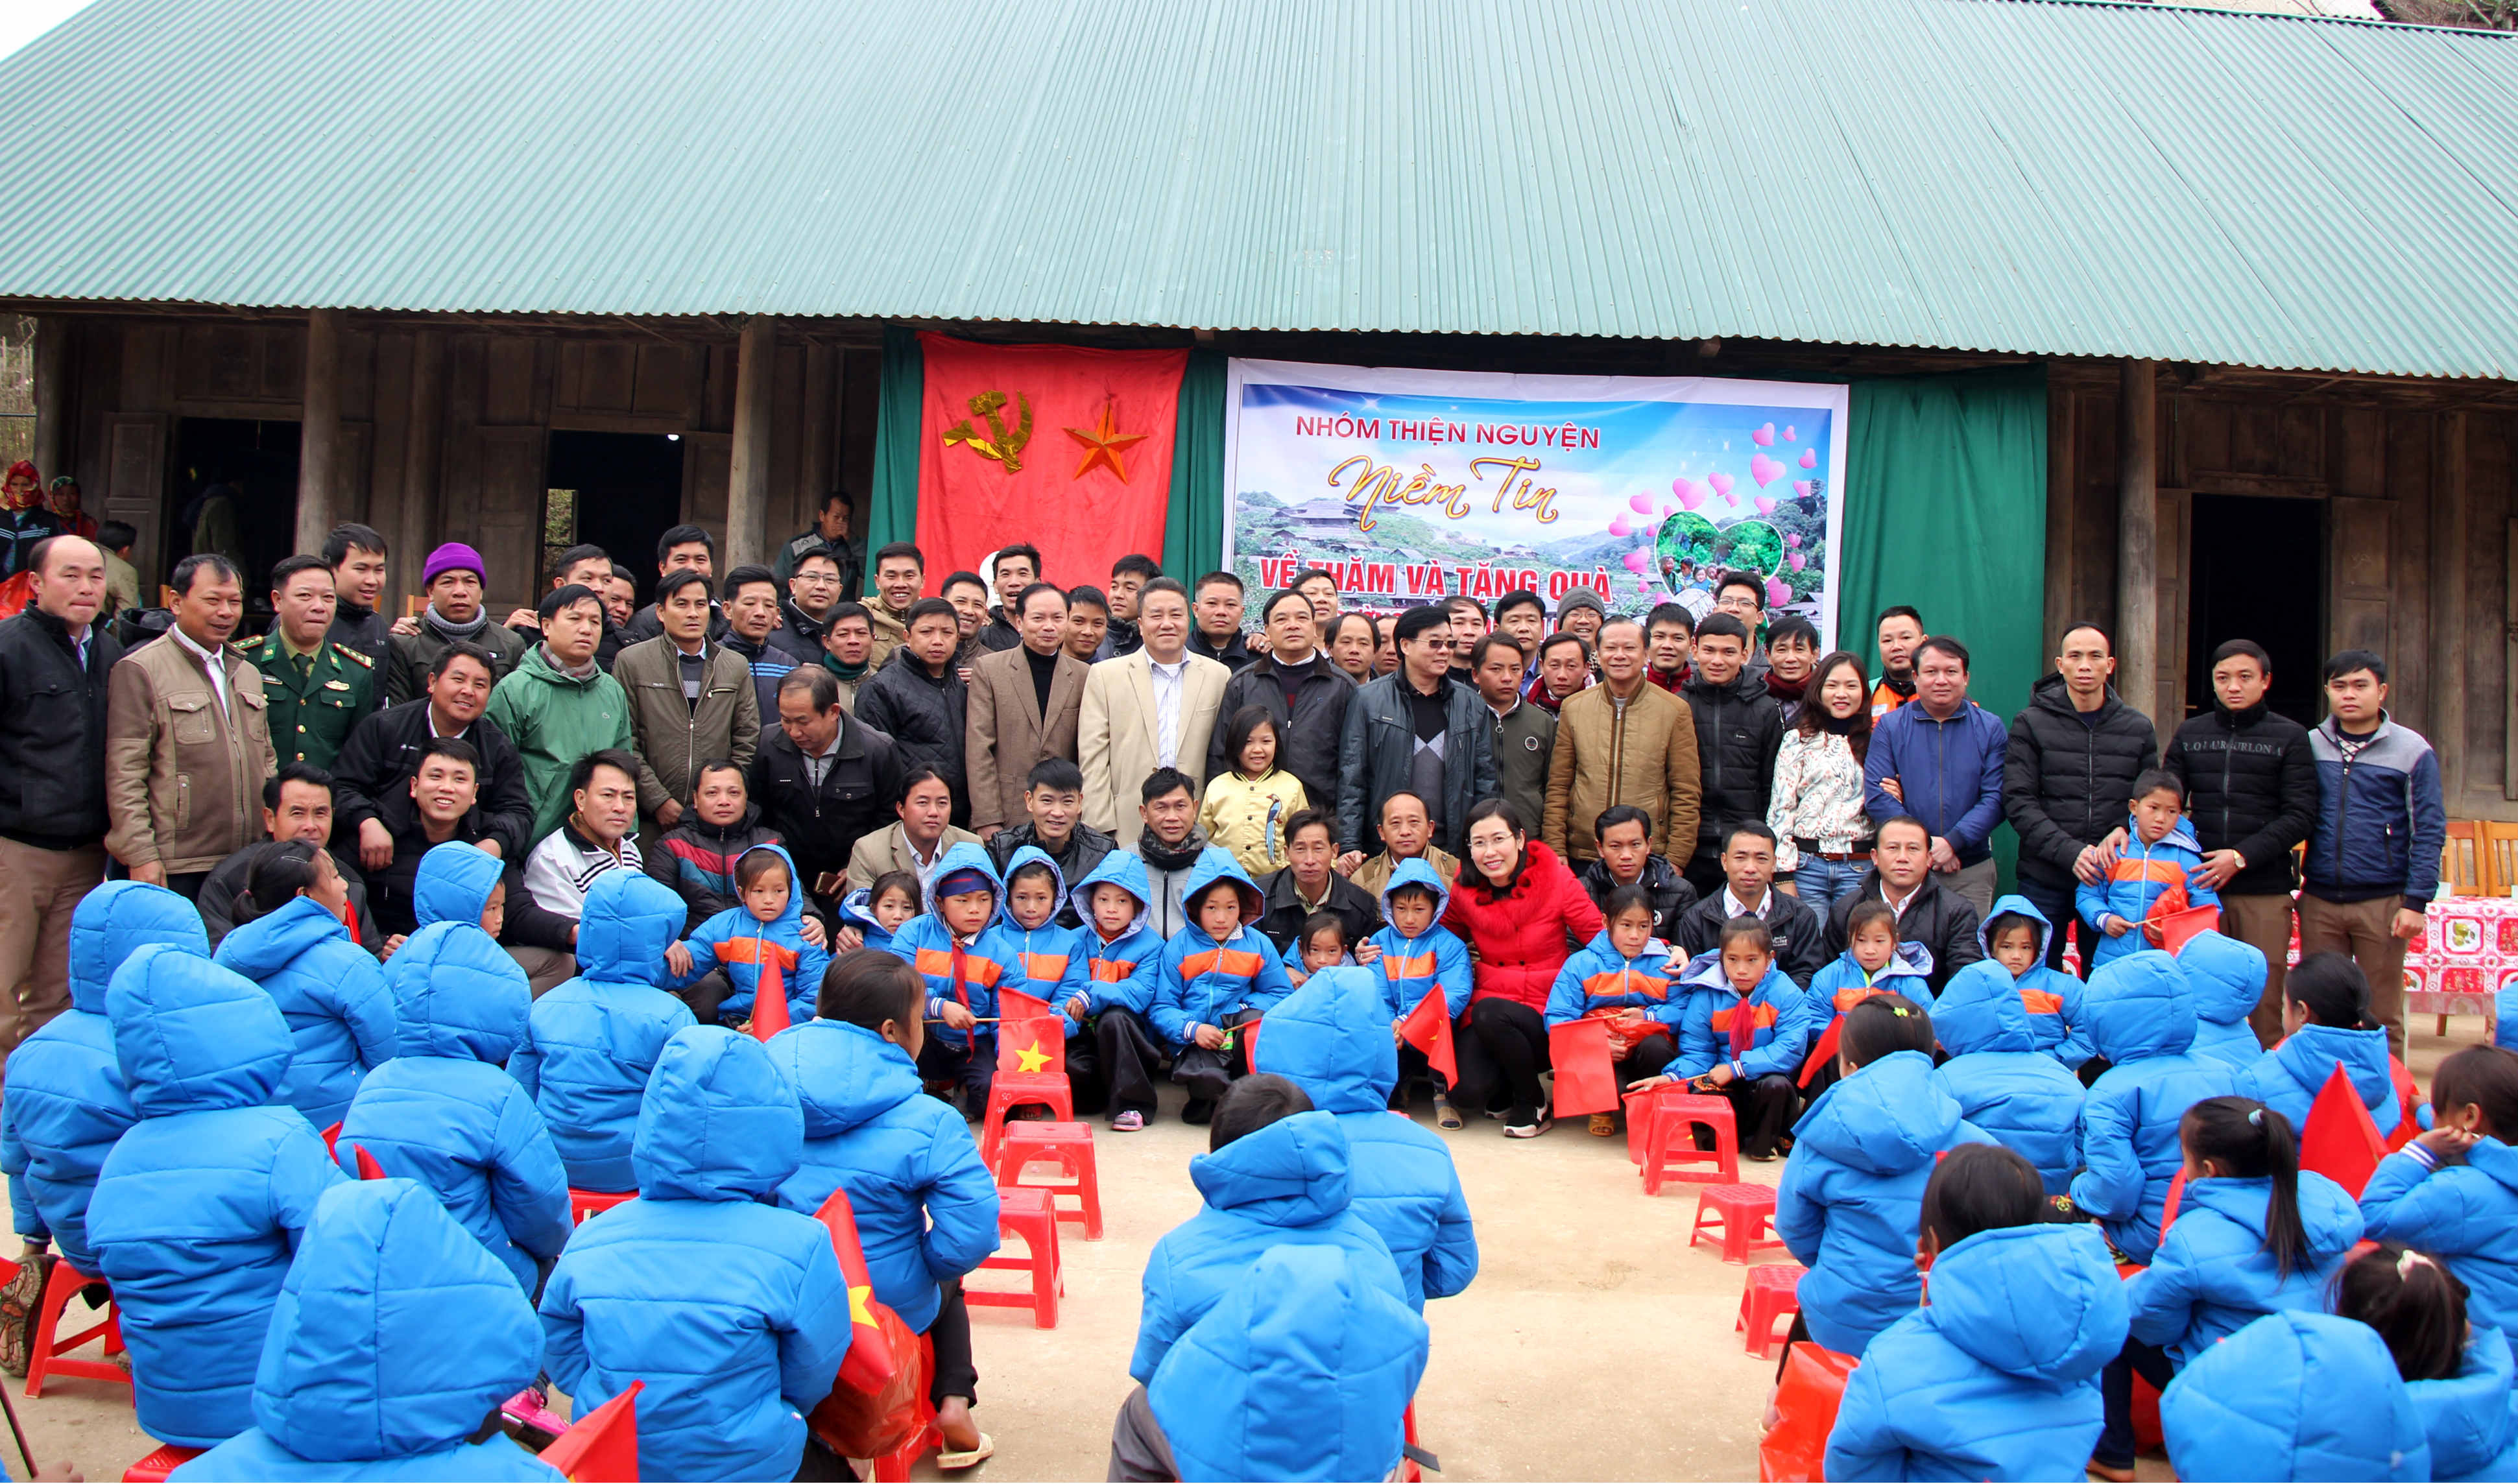 Các thầy cô và các vị khách cũng muốn lưu lại những khoảnh khắc nơi ngôi trường vùng biên giới rẻo cao, 100% học sinh người Mông.